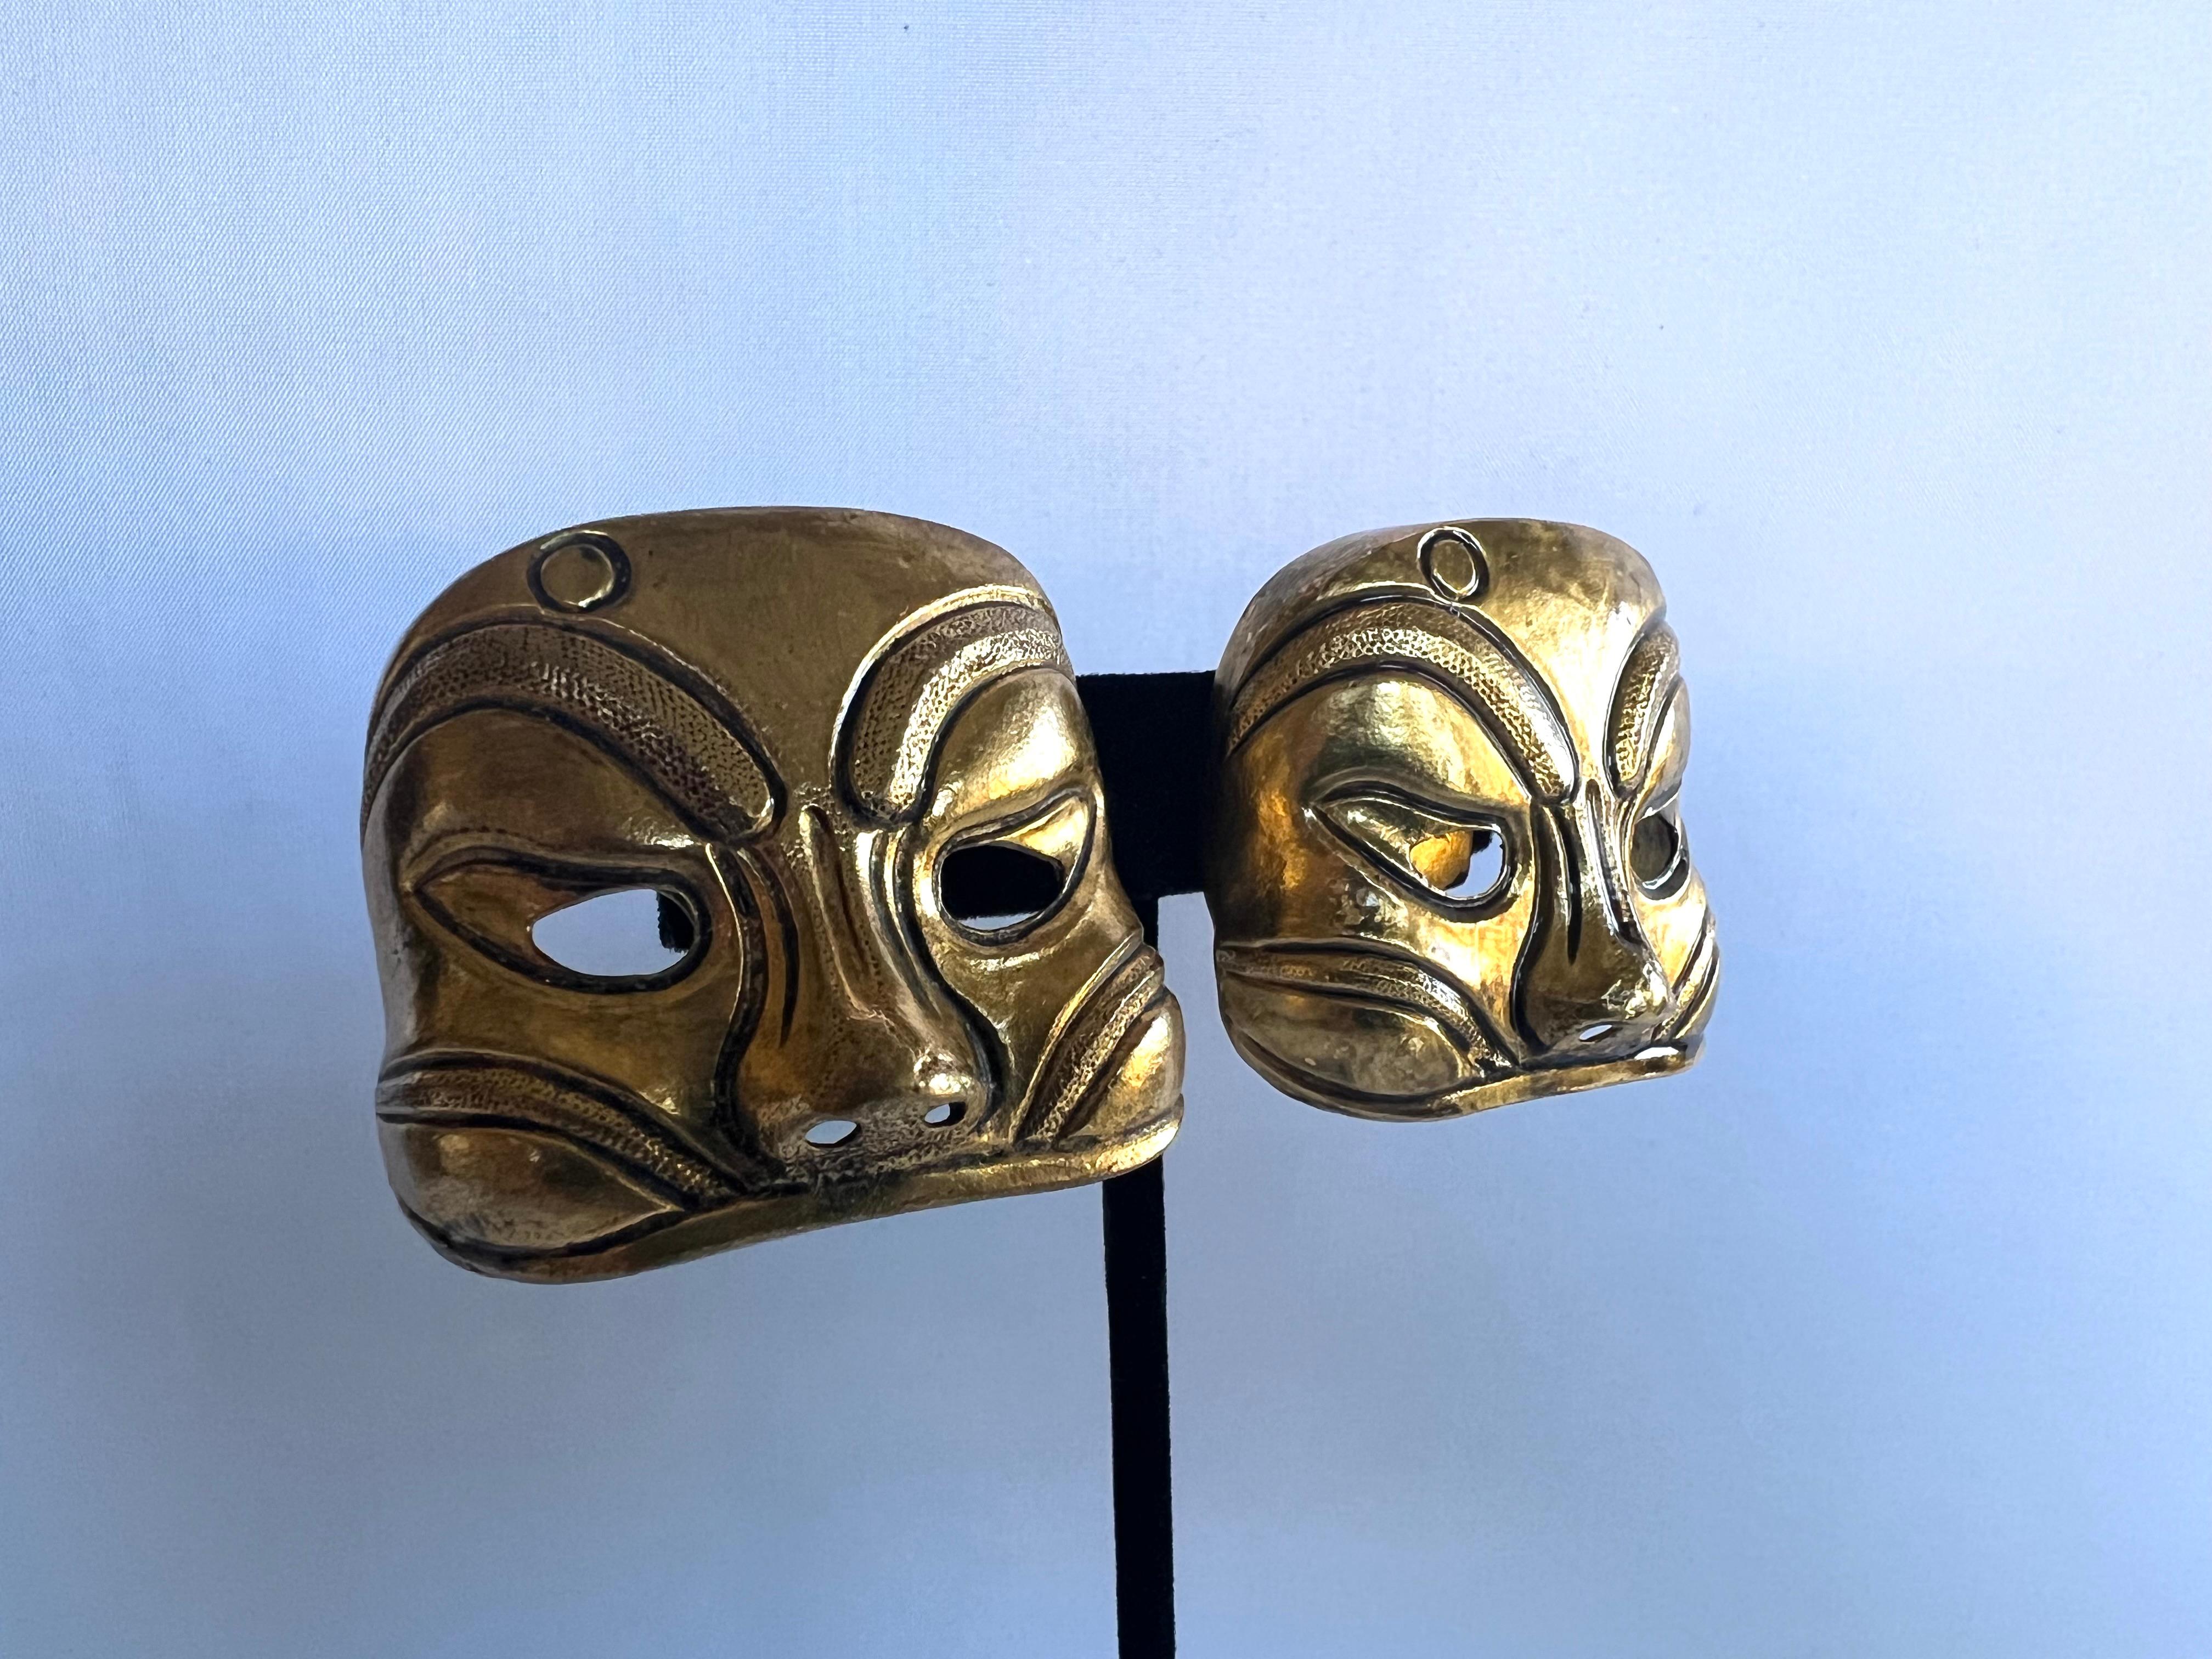 Boucles d'oreilles vintage Isabel Canovas Paris avec masque en métal doré.

Le collier assorti est sur une liste séparée.